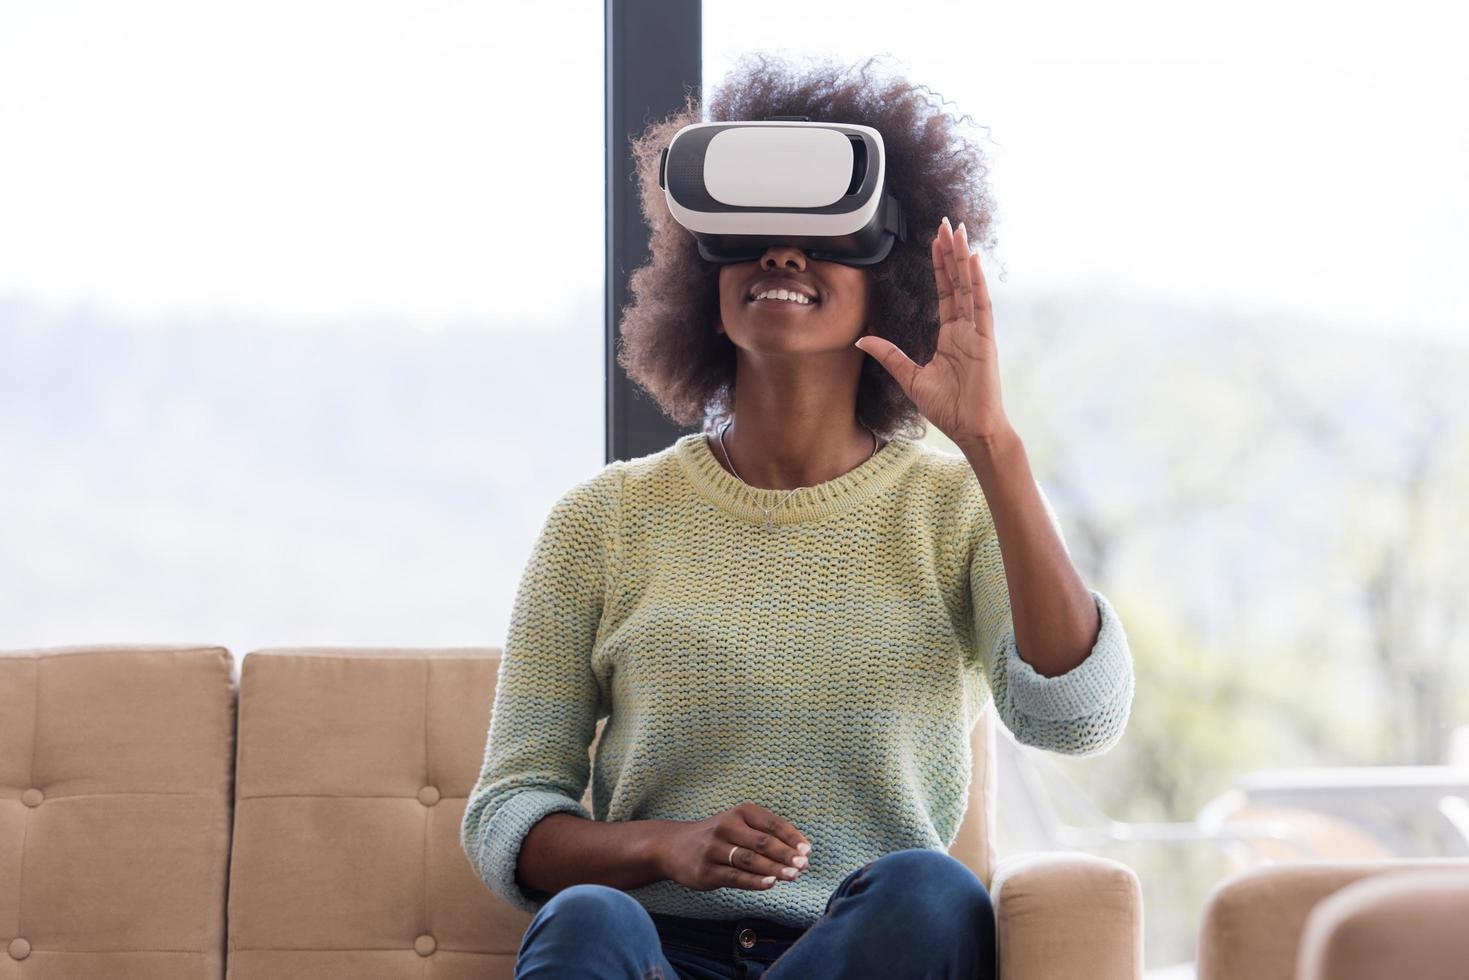 schwarze frau mit vr-headset-brille der virtuellen realität foto